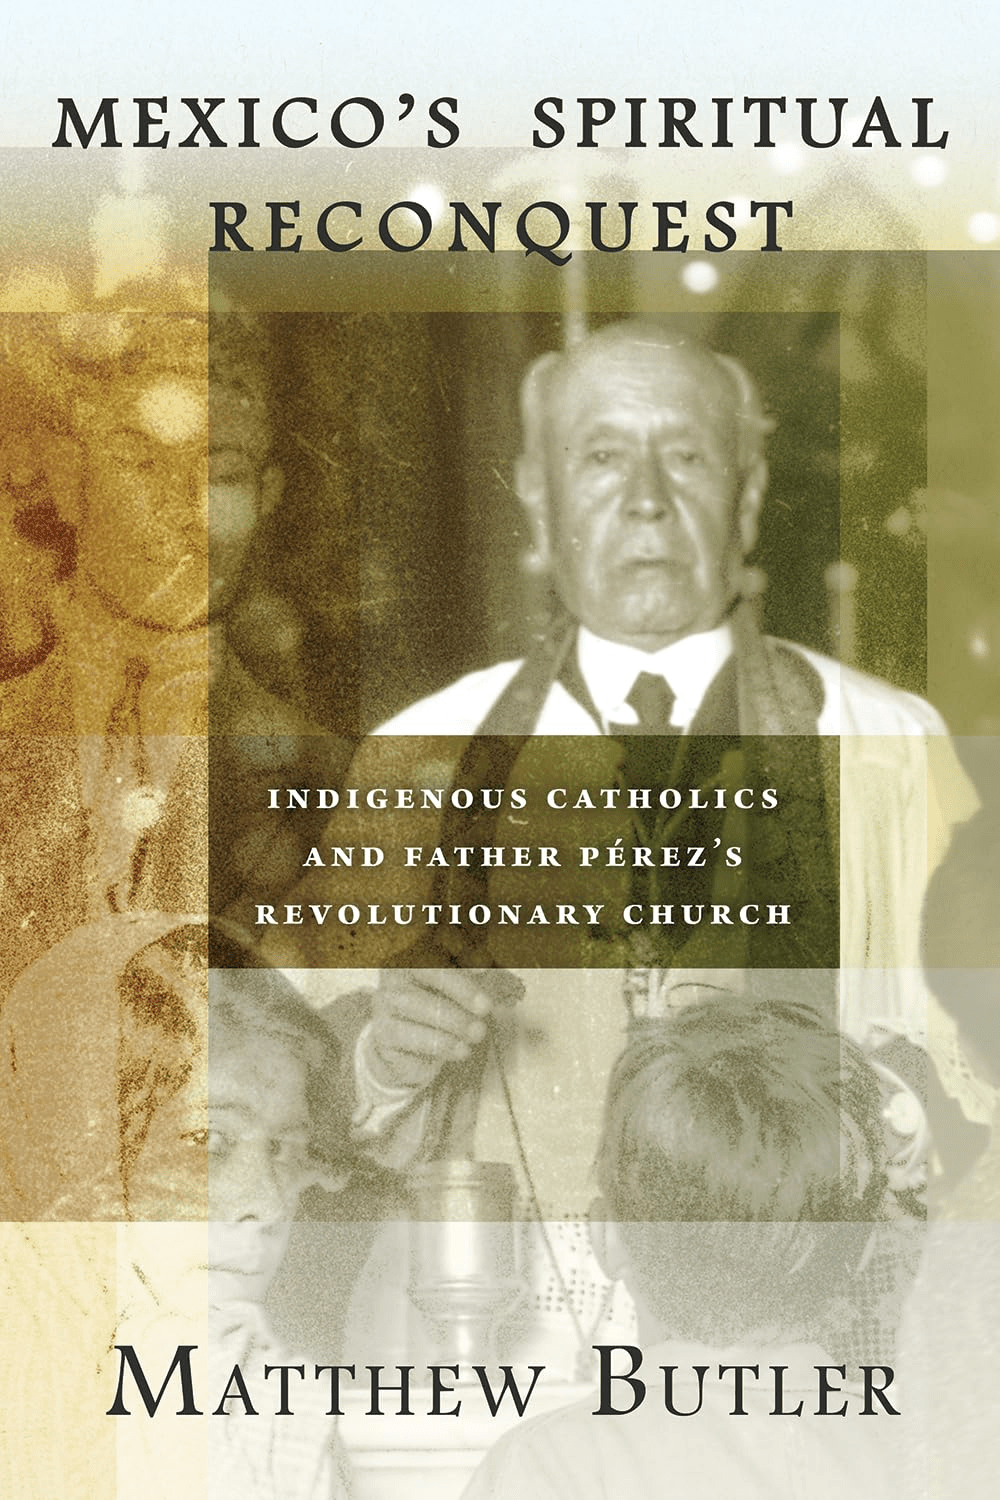 Patriarca Pérez de la Iglesia Católica Apostólica Mexicana